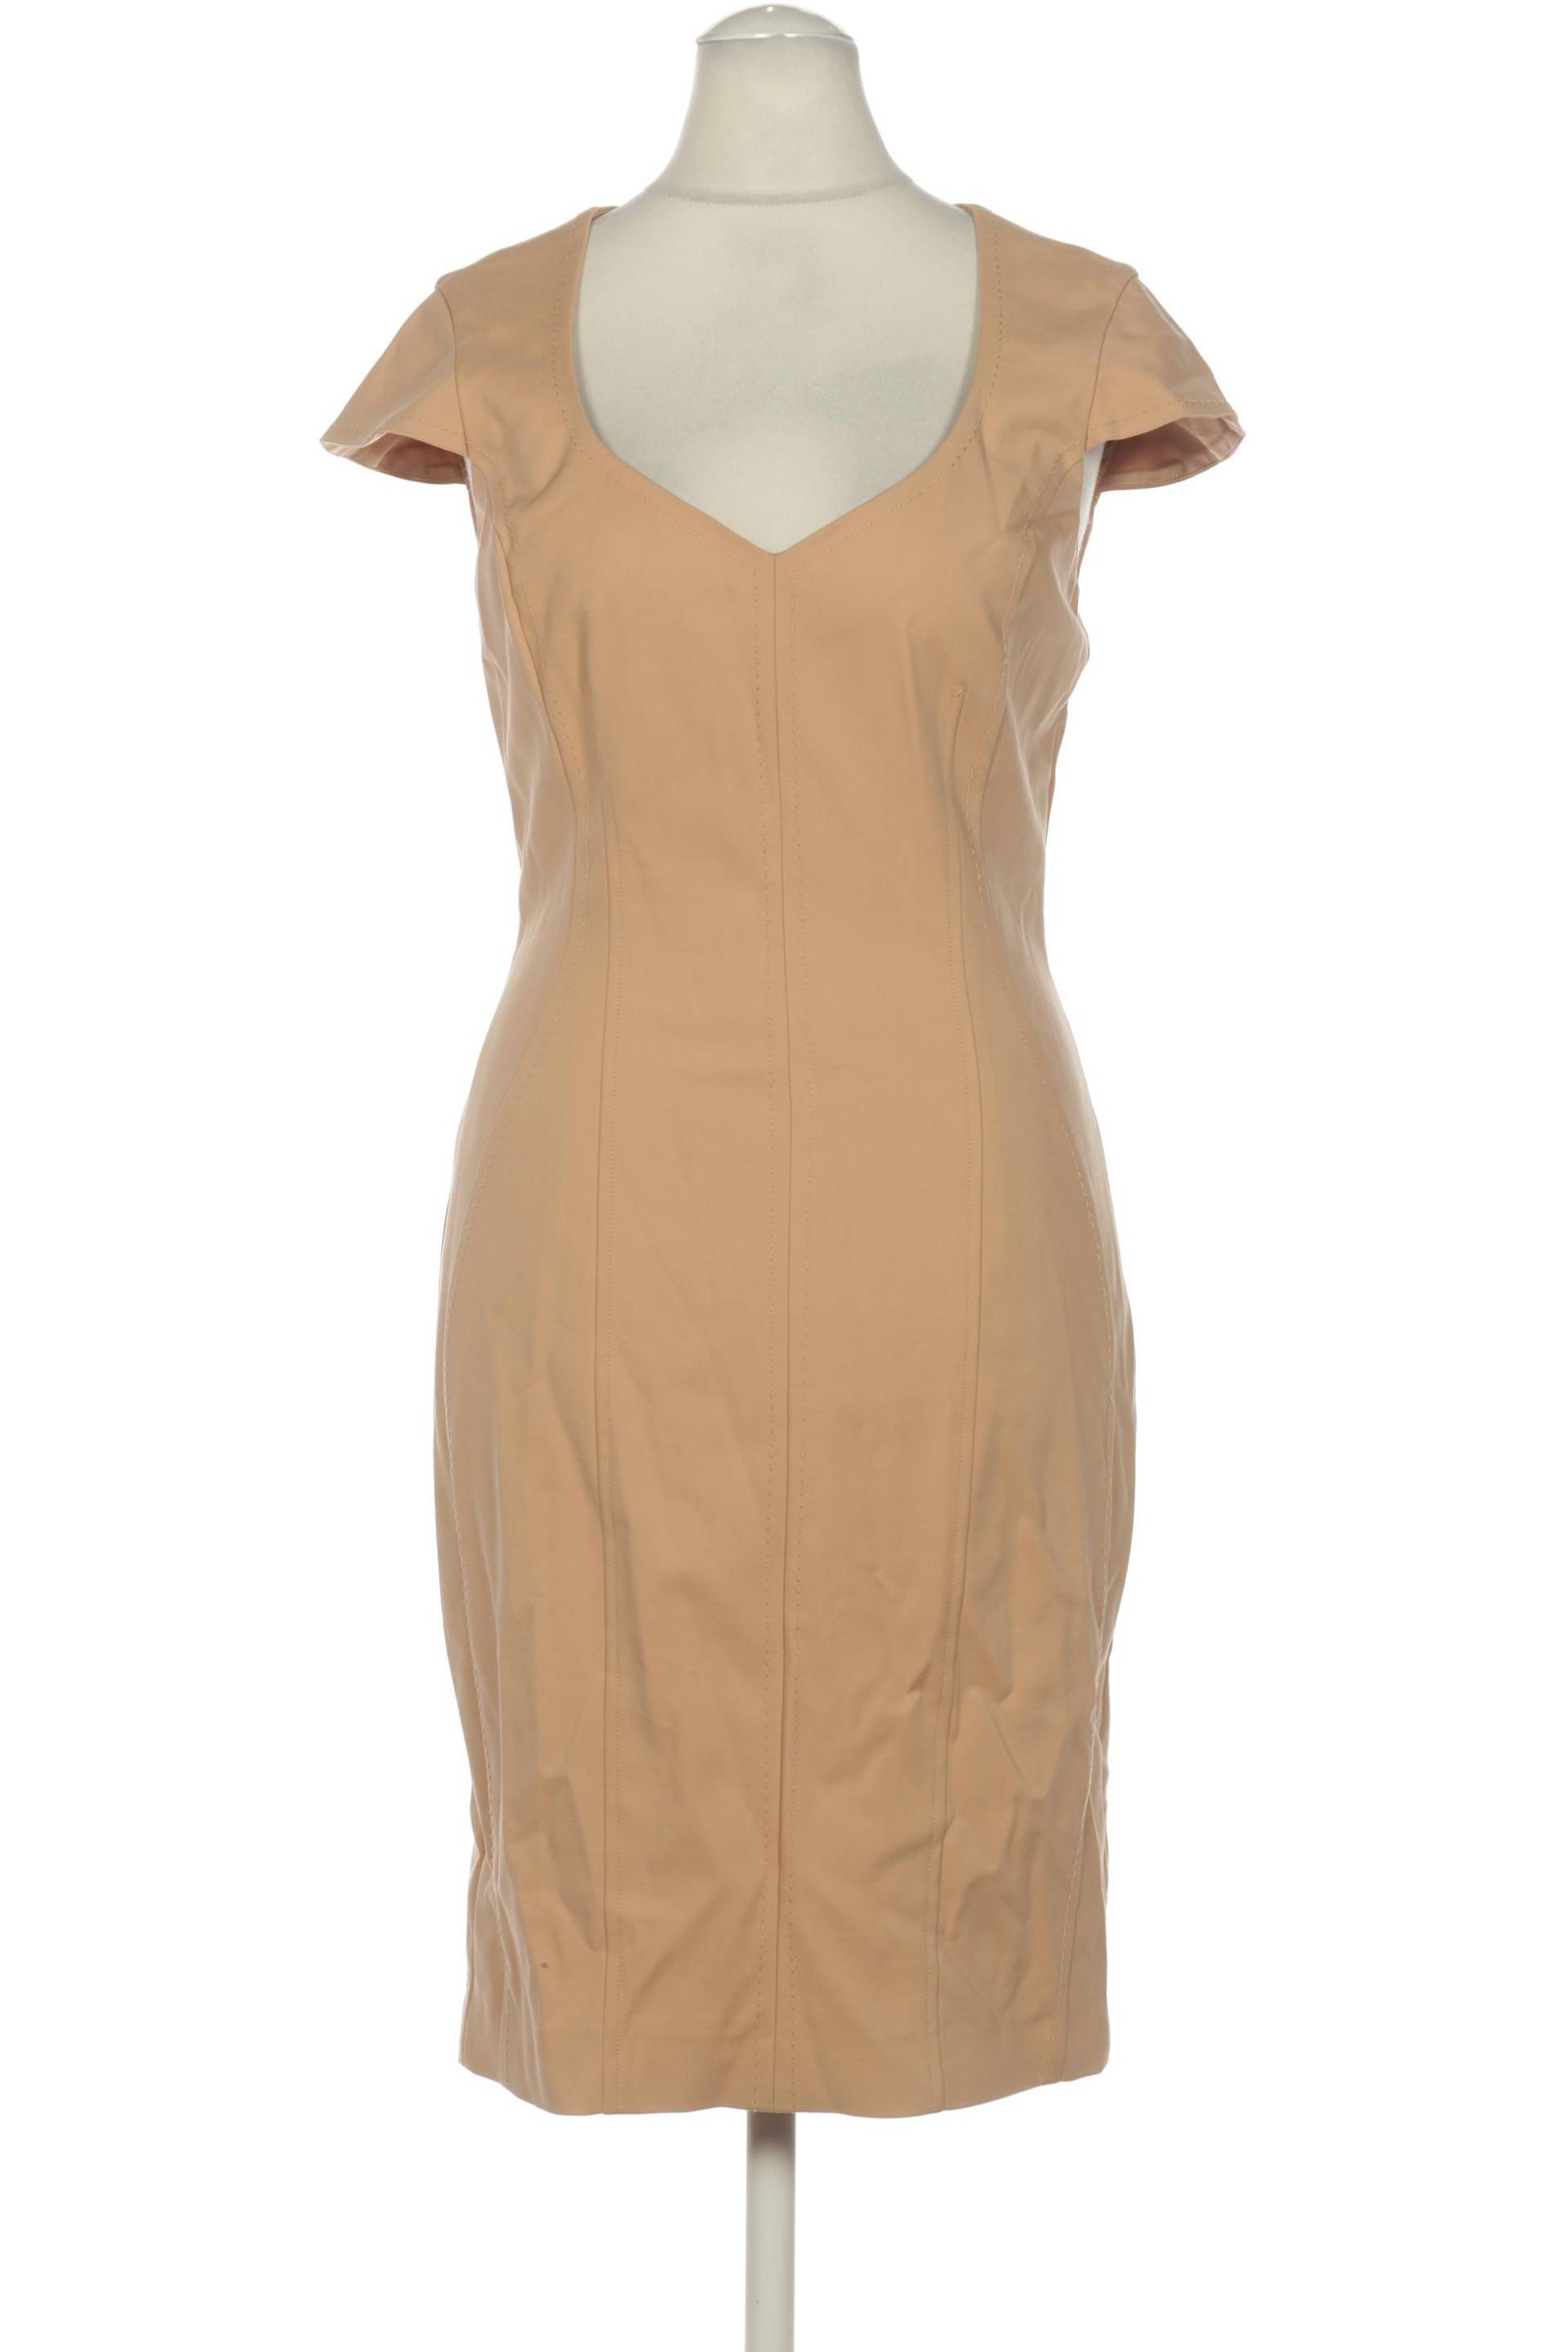 Marciano Damen Kleid, beige, Gr. 42 von Marciano